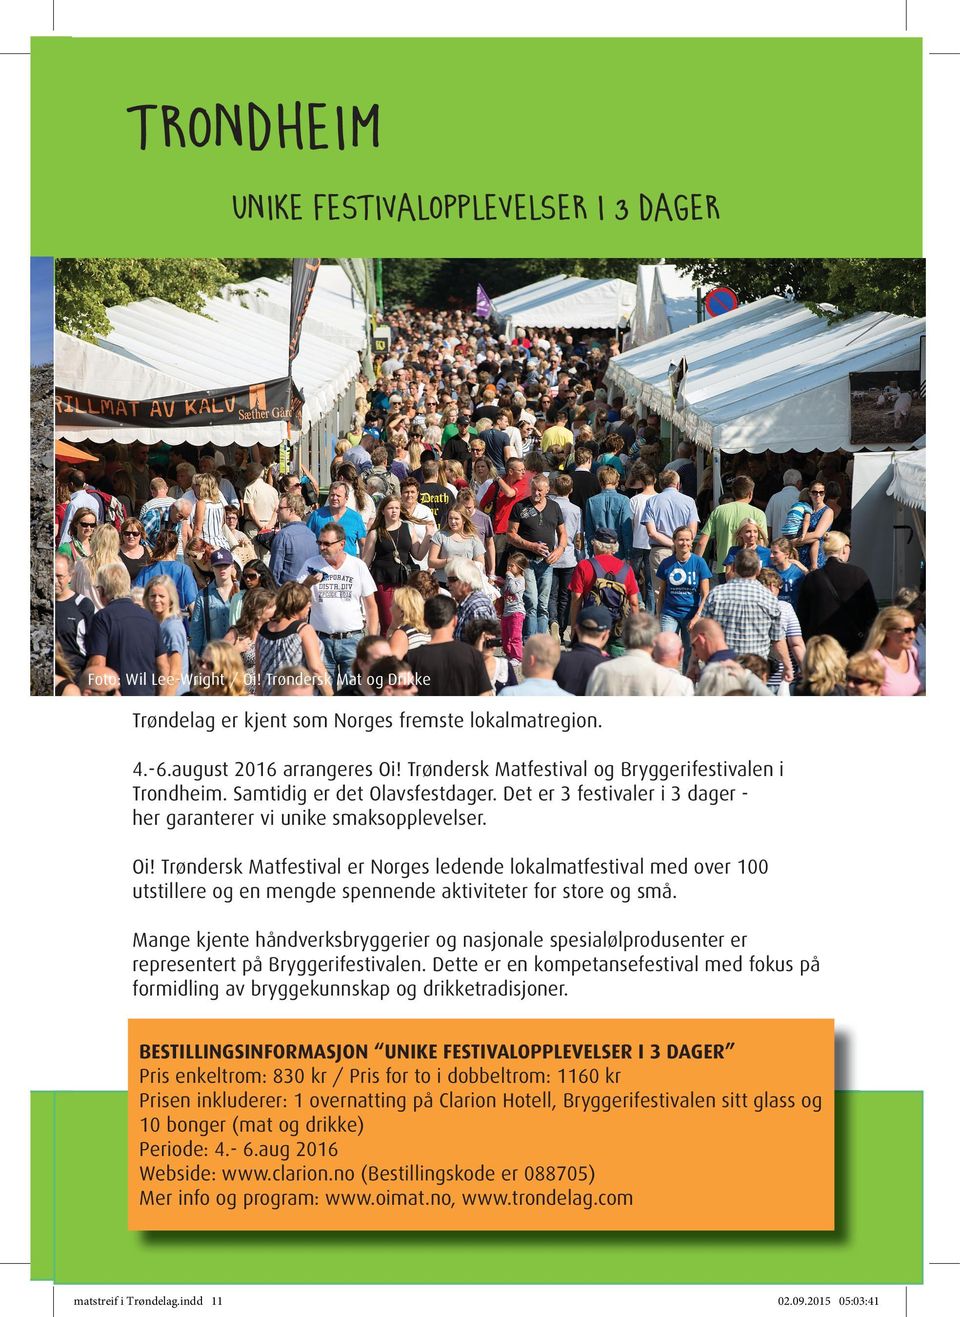 Trøndersk Matfestival er Norges ledende lokalmatfestival med over 100 utstillere og en mengde spennende aktiviteter for store og små.